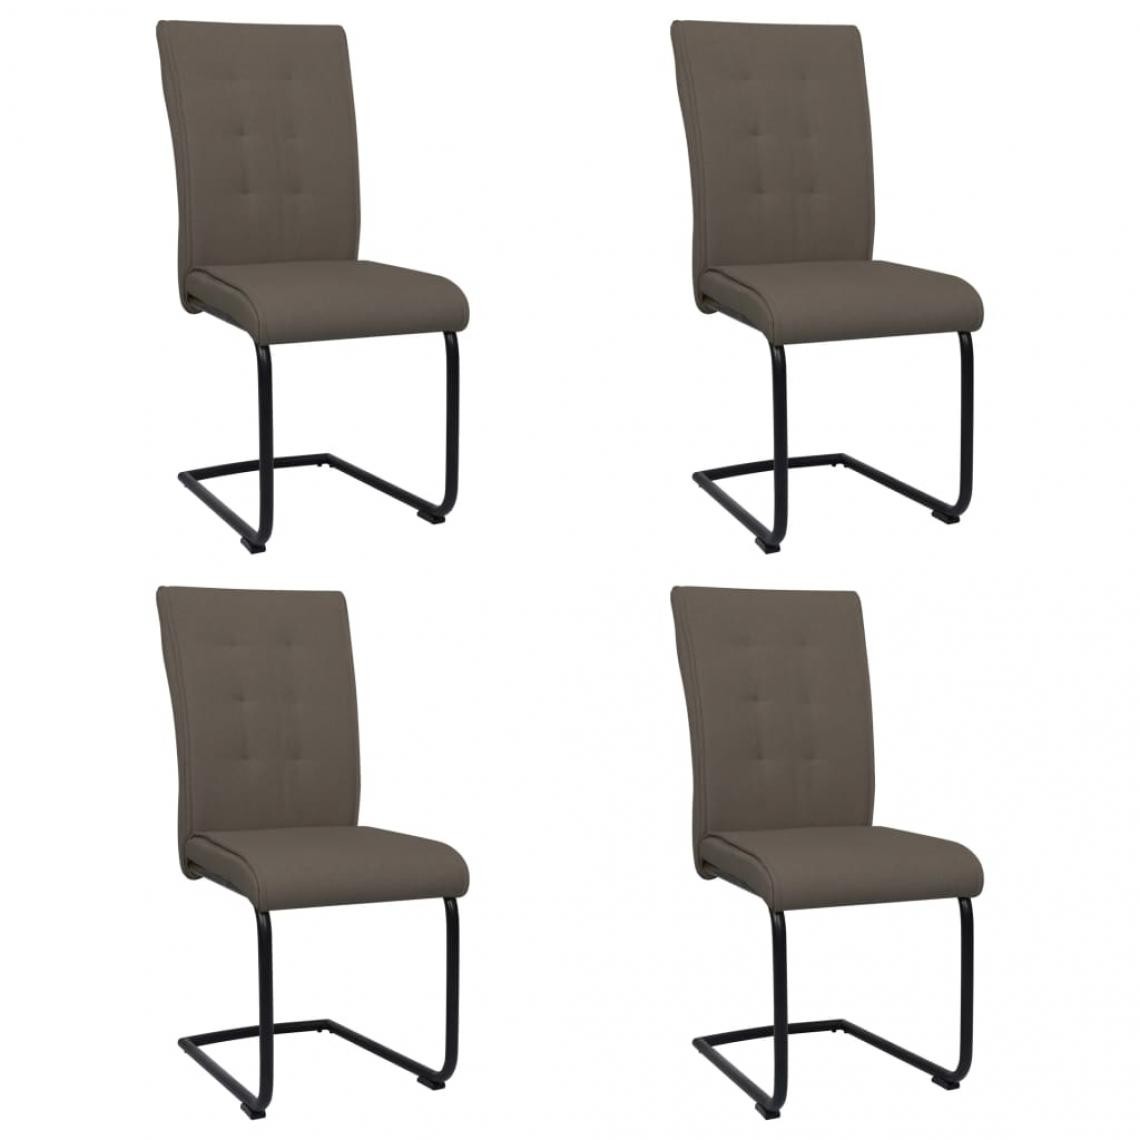 Decoshop26 - Lot de 4 chaises de salle à manger cuisine cantilever design moderne tissu taupe CDS021435 - Chaises